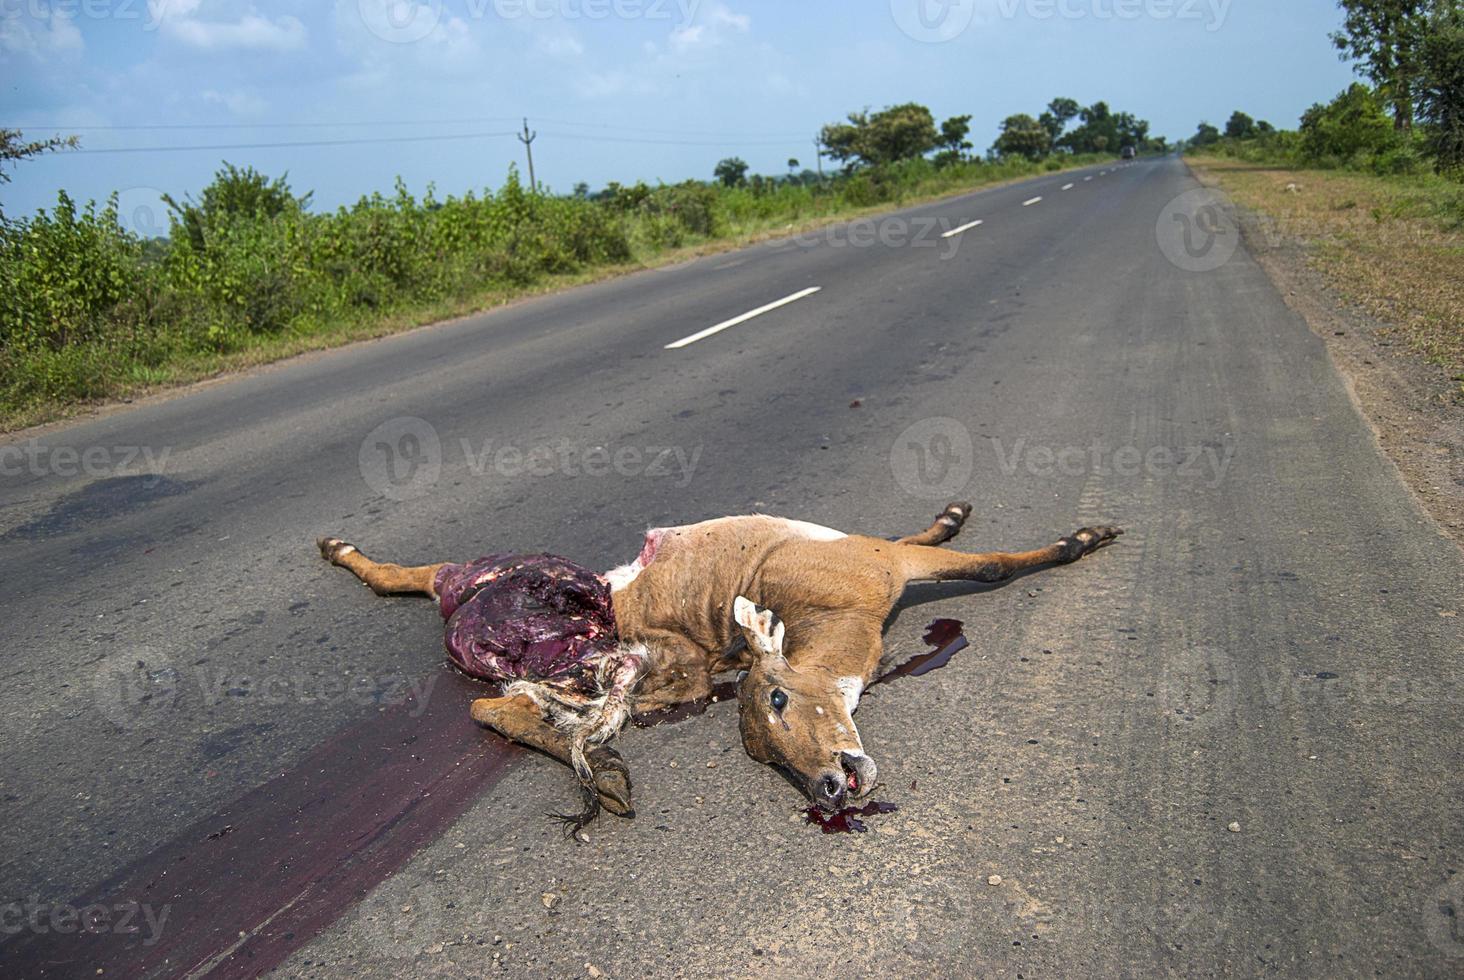 animal morto na estrada atropelado por um veículo, dirija com cuidado, acidente foto